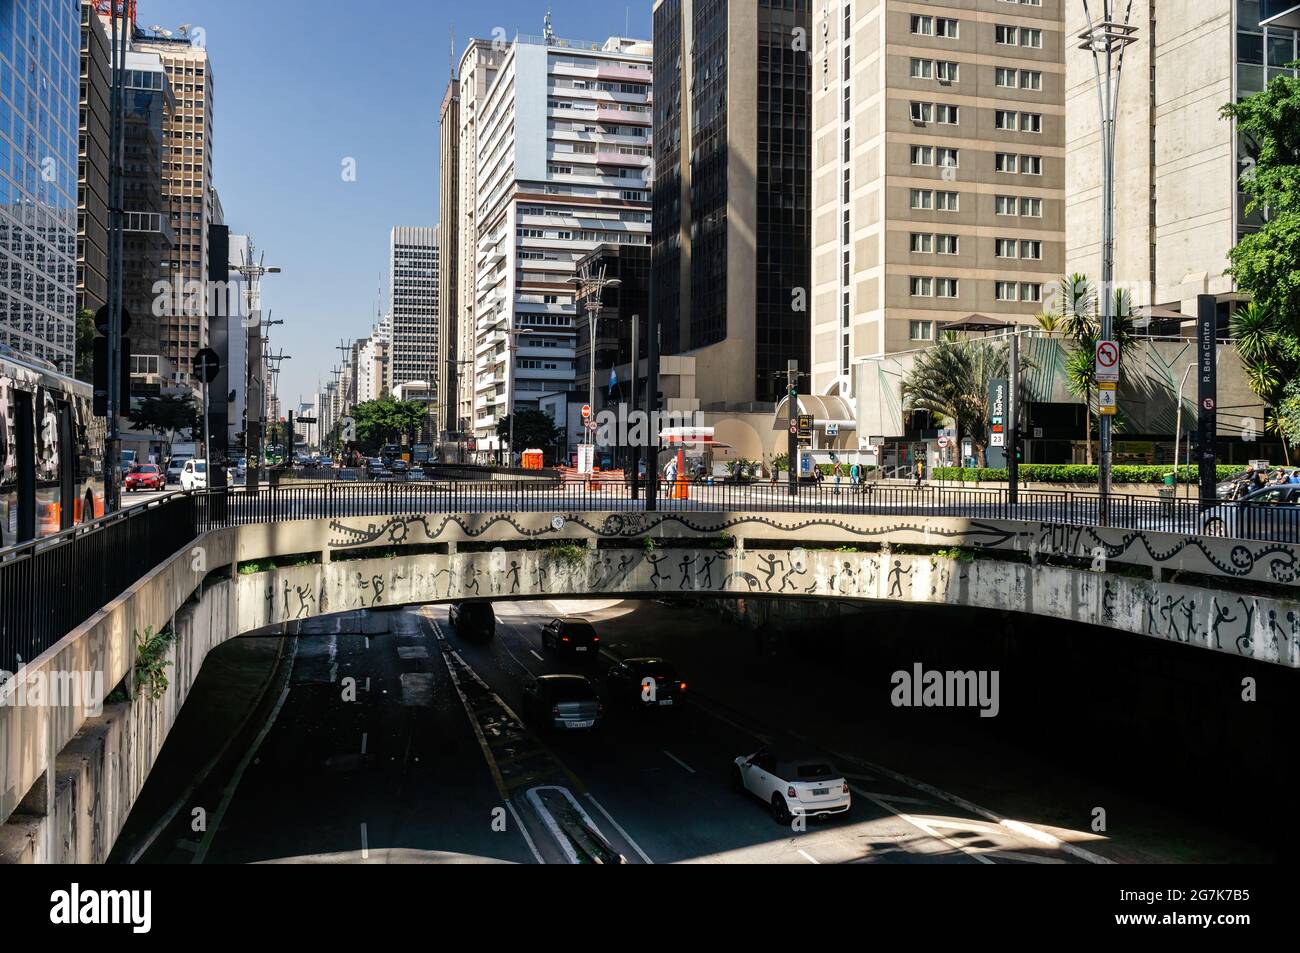 Vista parziale del tunnel Jose Roberto Fanganiello Melhem, una breve strada a livello inferiore situata all'estremità nord-ovest di Paulista Avenue. Foto Stock